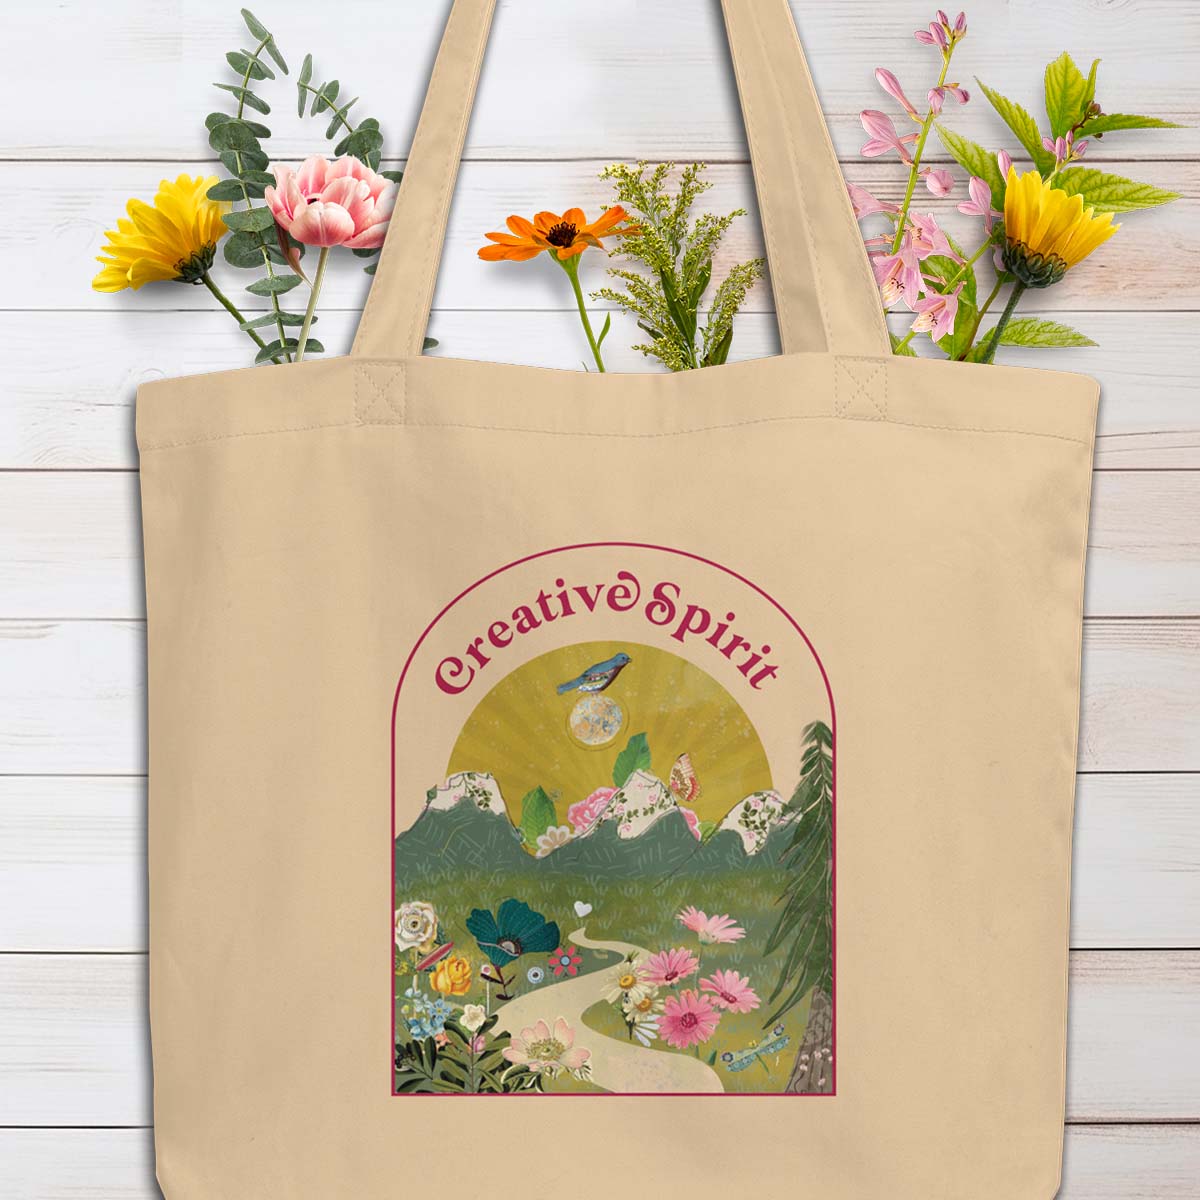 Creative Spirit Tote Bag